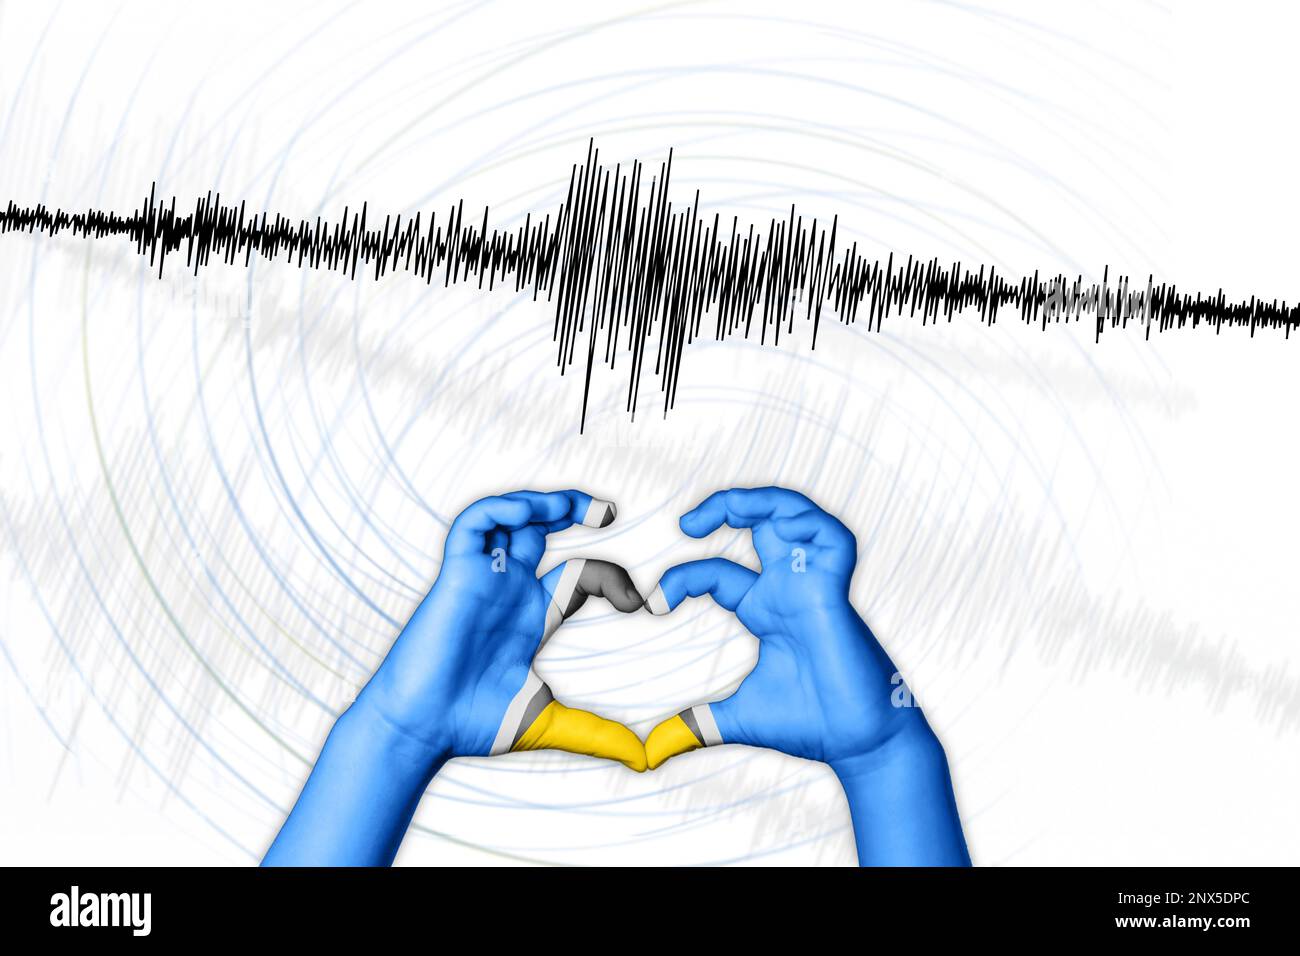 Seismische Aktivität Erdbeben St. Lucia Symbol der Heart Richter Scale Stockfoto